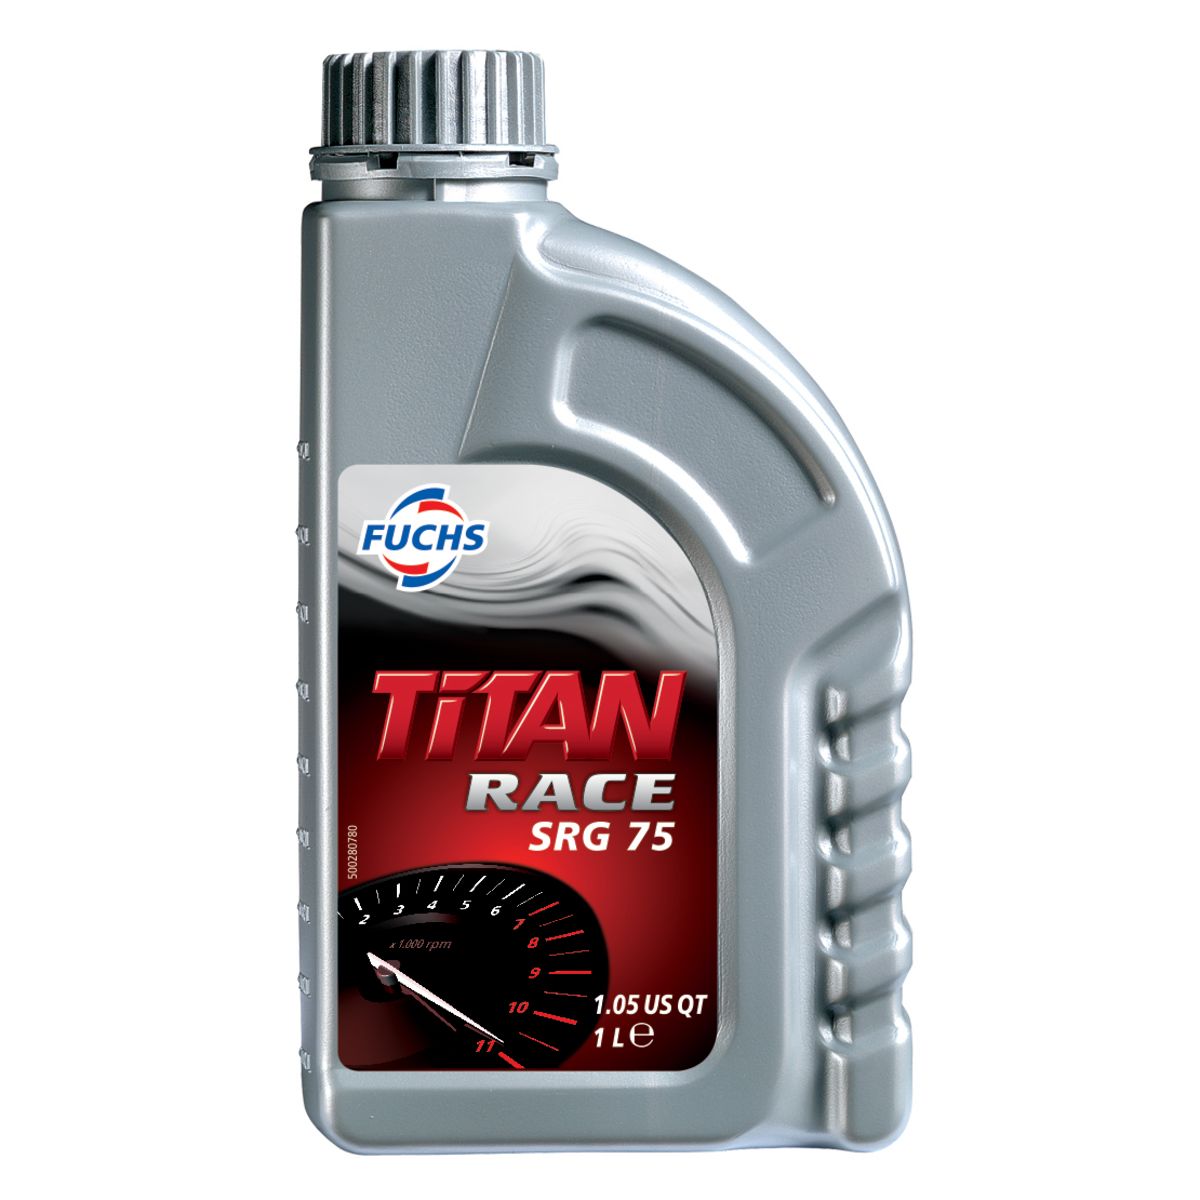 Трансмиссионные масла titan. Titan Race Pro s 10w-60. Fuchs Titan Race Pro s 10w-60. Fuchs Titan Gear syn 75w-90 4l. Fuchs Titan mc10w 40 1l.